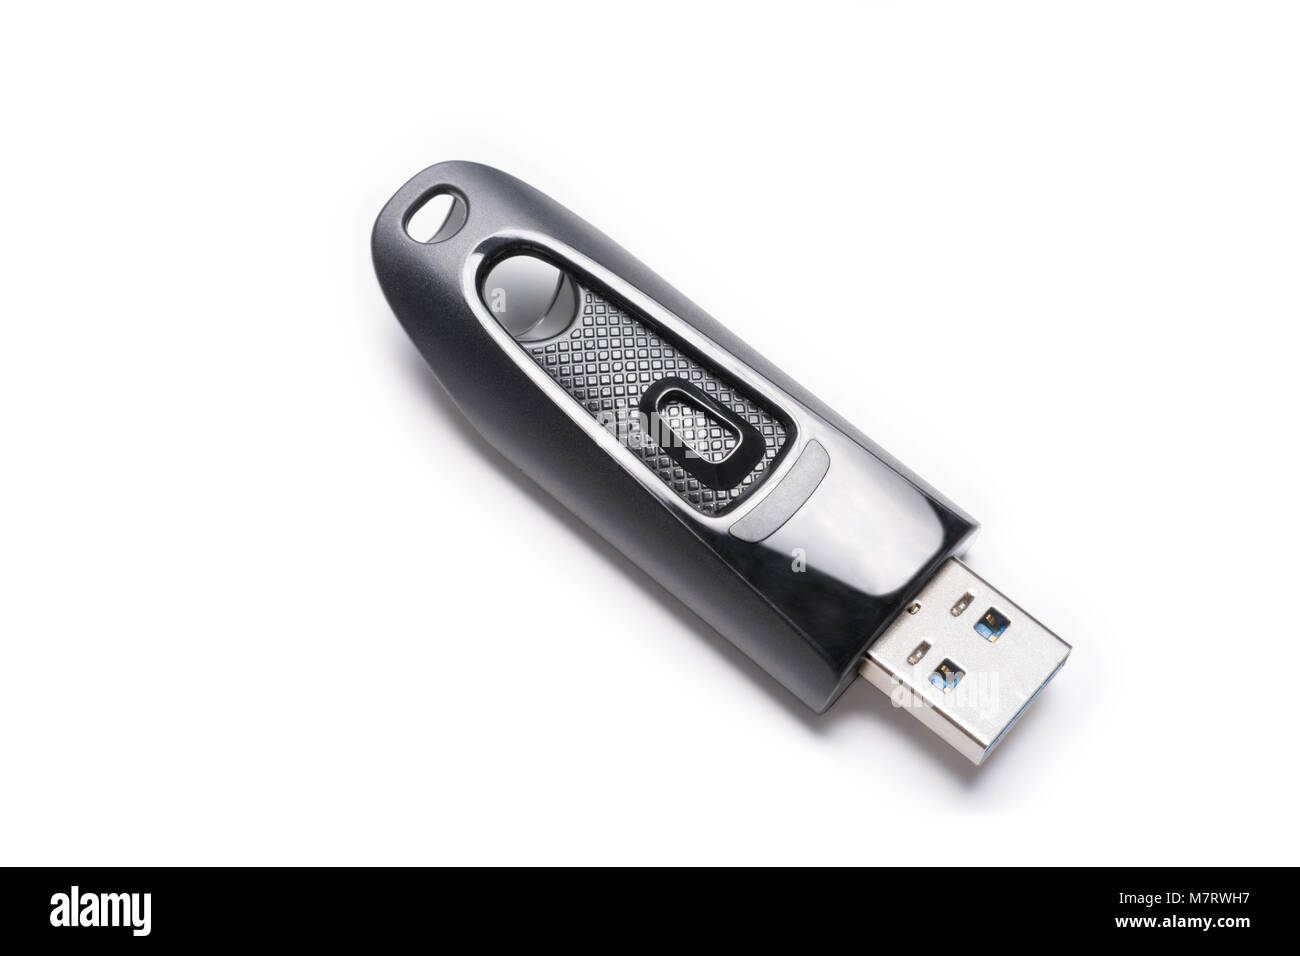 Opened Black USB 3.0 Memory Stick / USB 3.0 Flash Drive Isolated On White Background Stock Photo